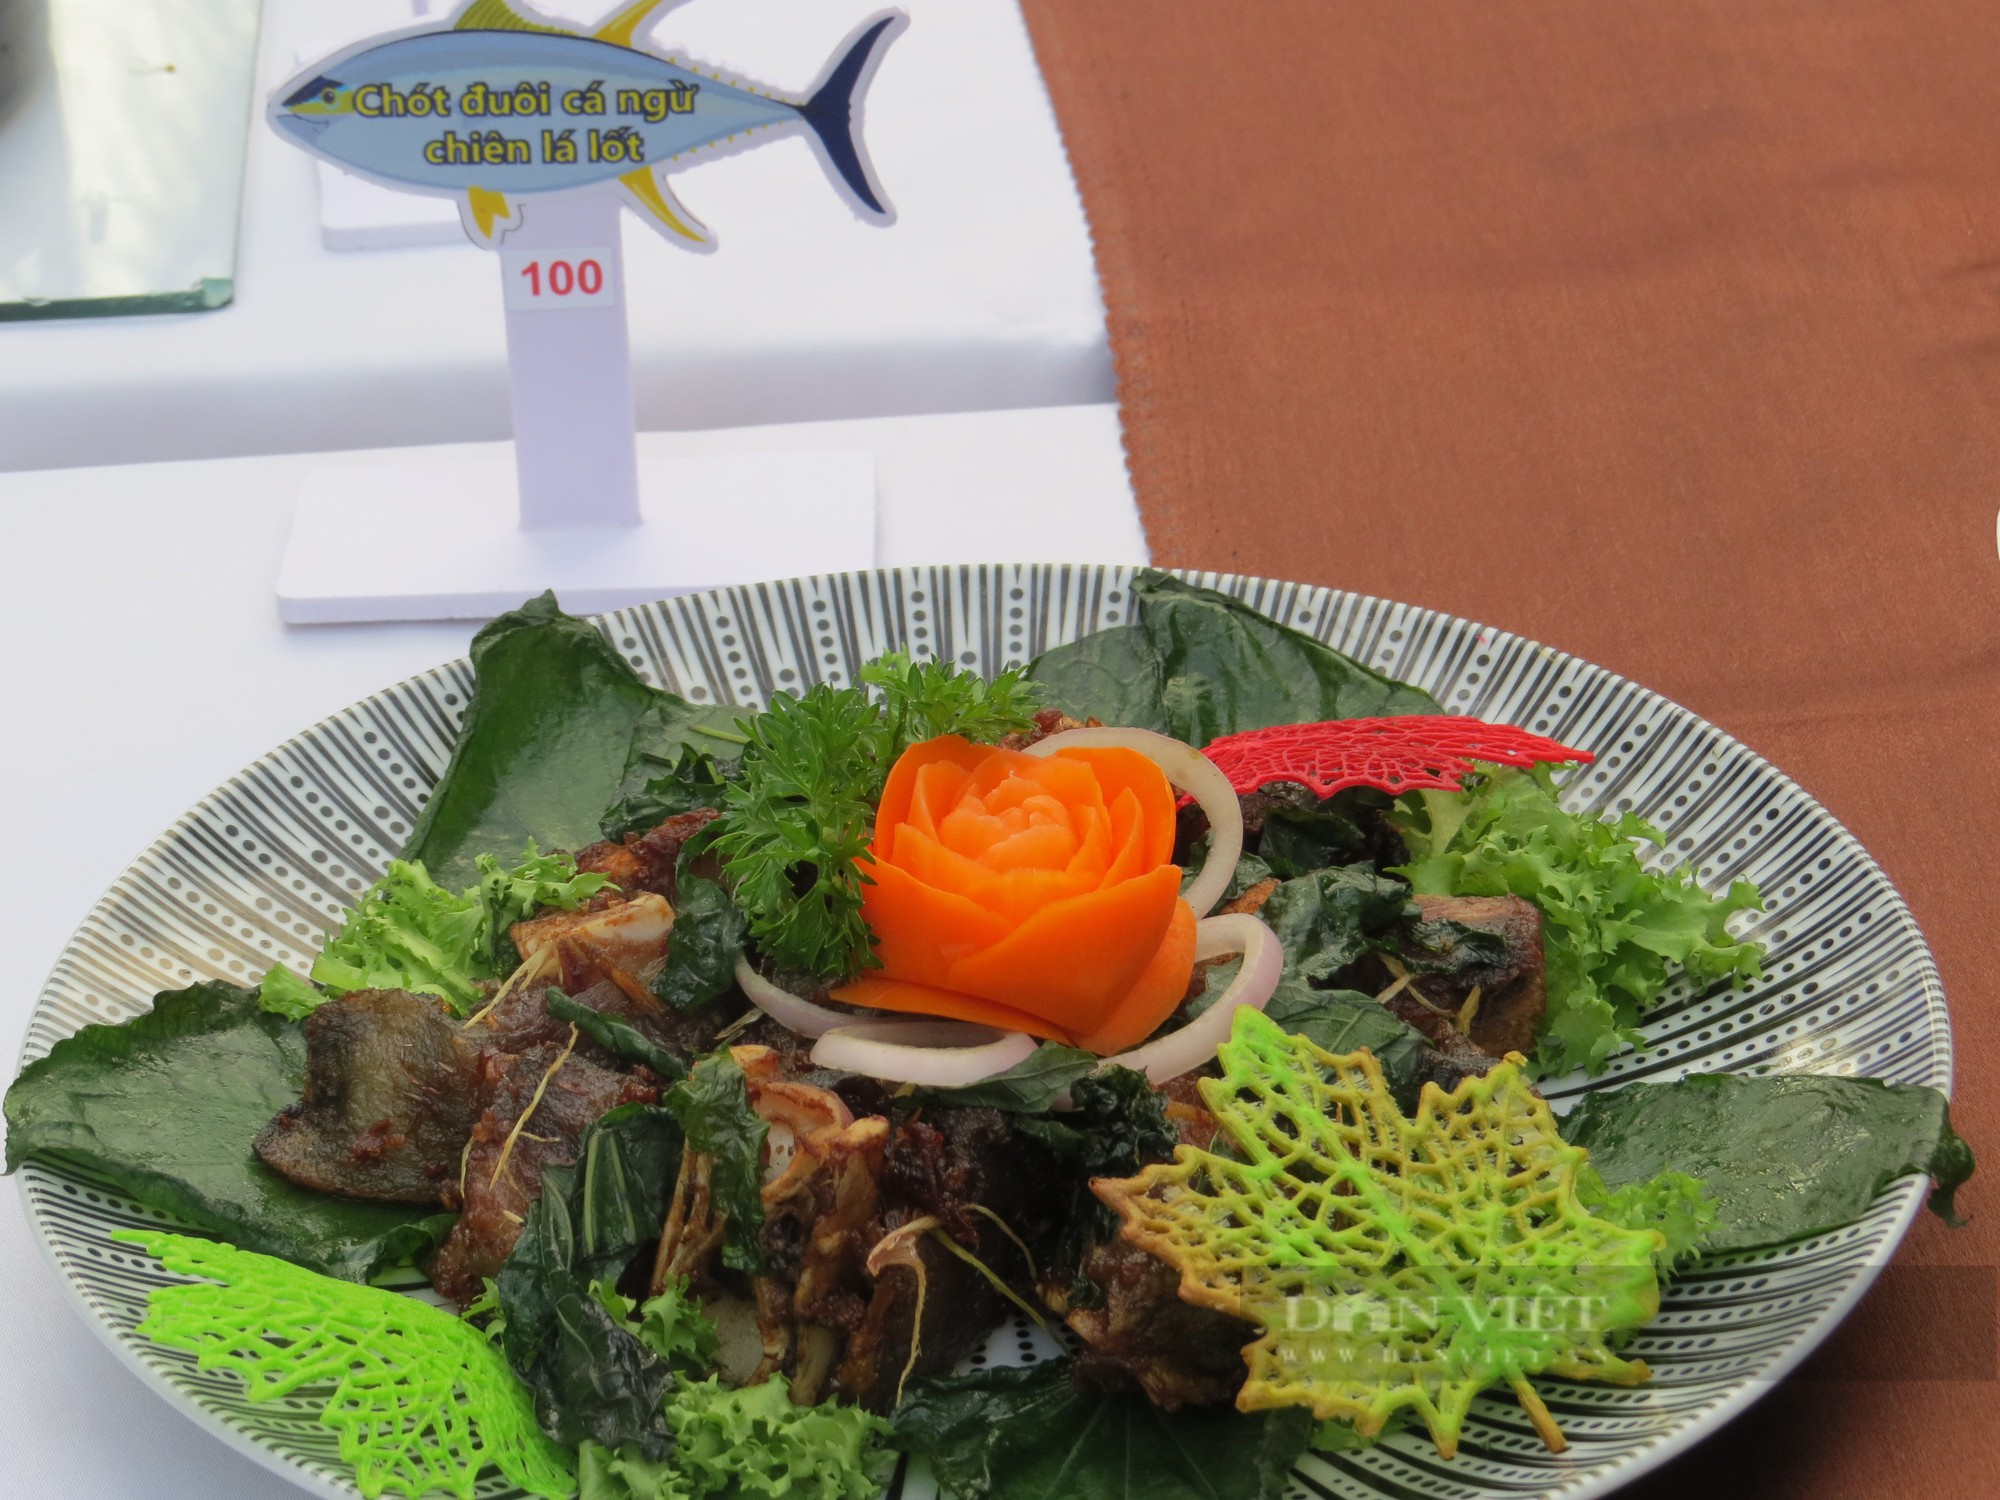 Độc đáo kỷ lục 101 món ăn từ cá ngừ đại dương tại Phú Yên - Ảnh 4.